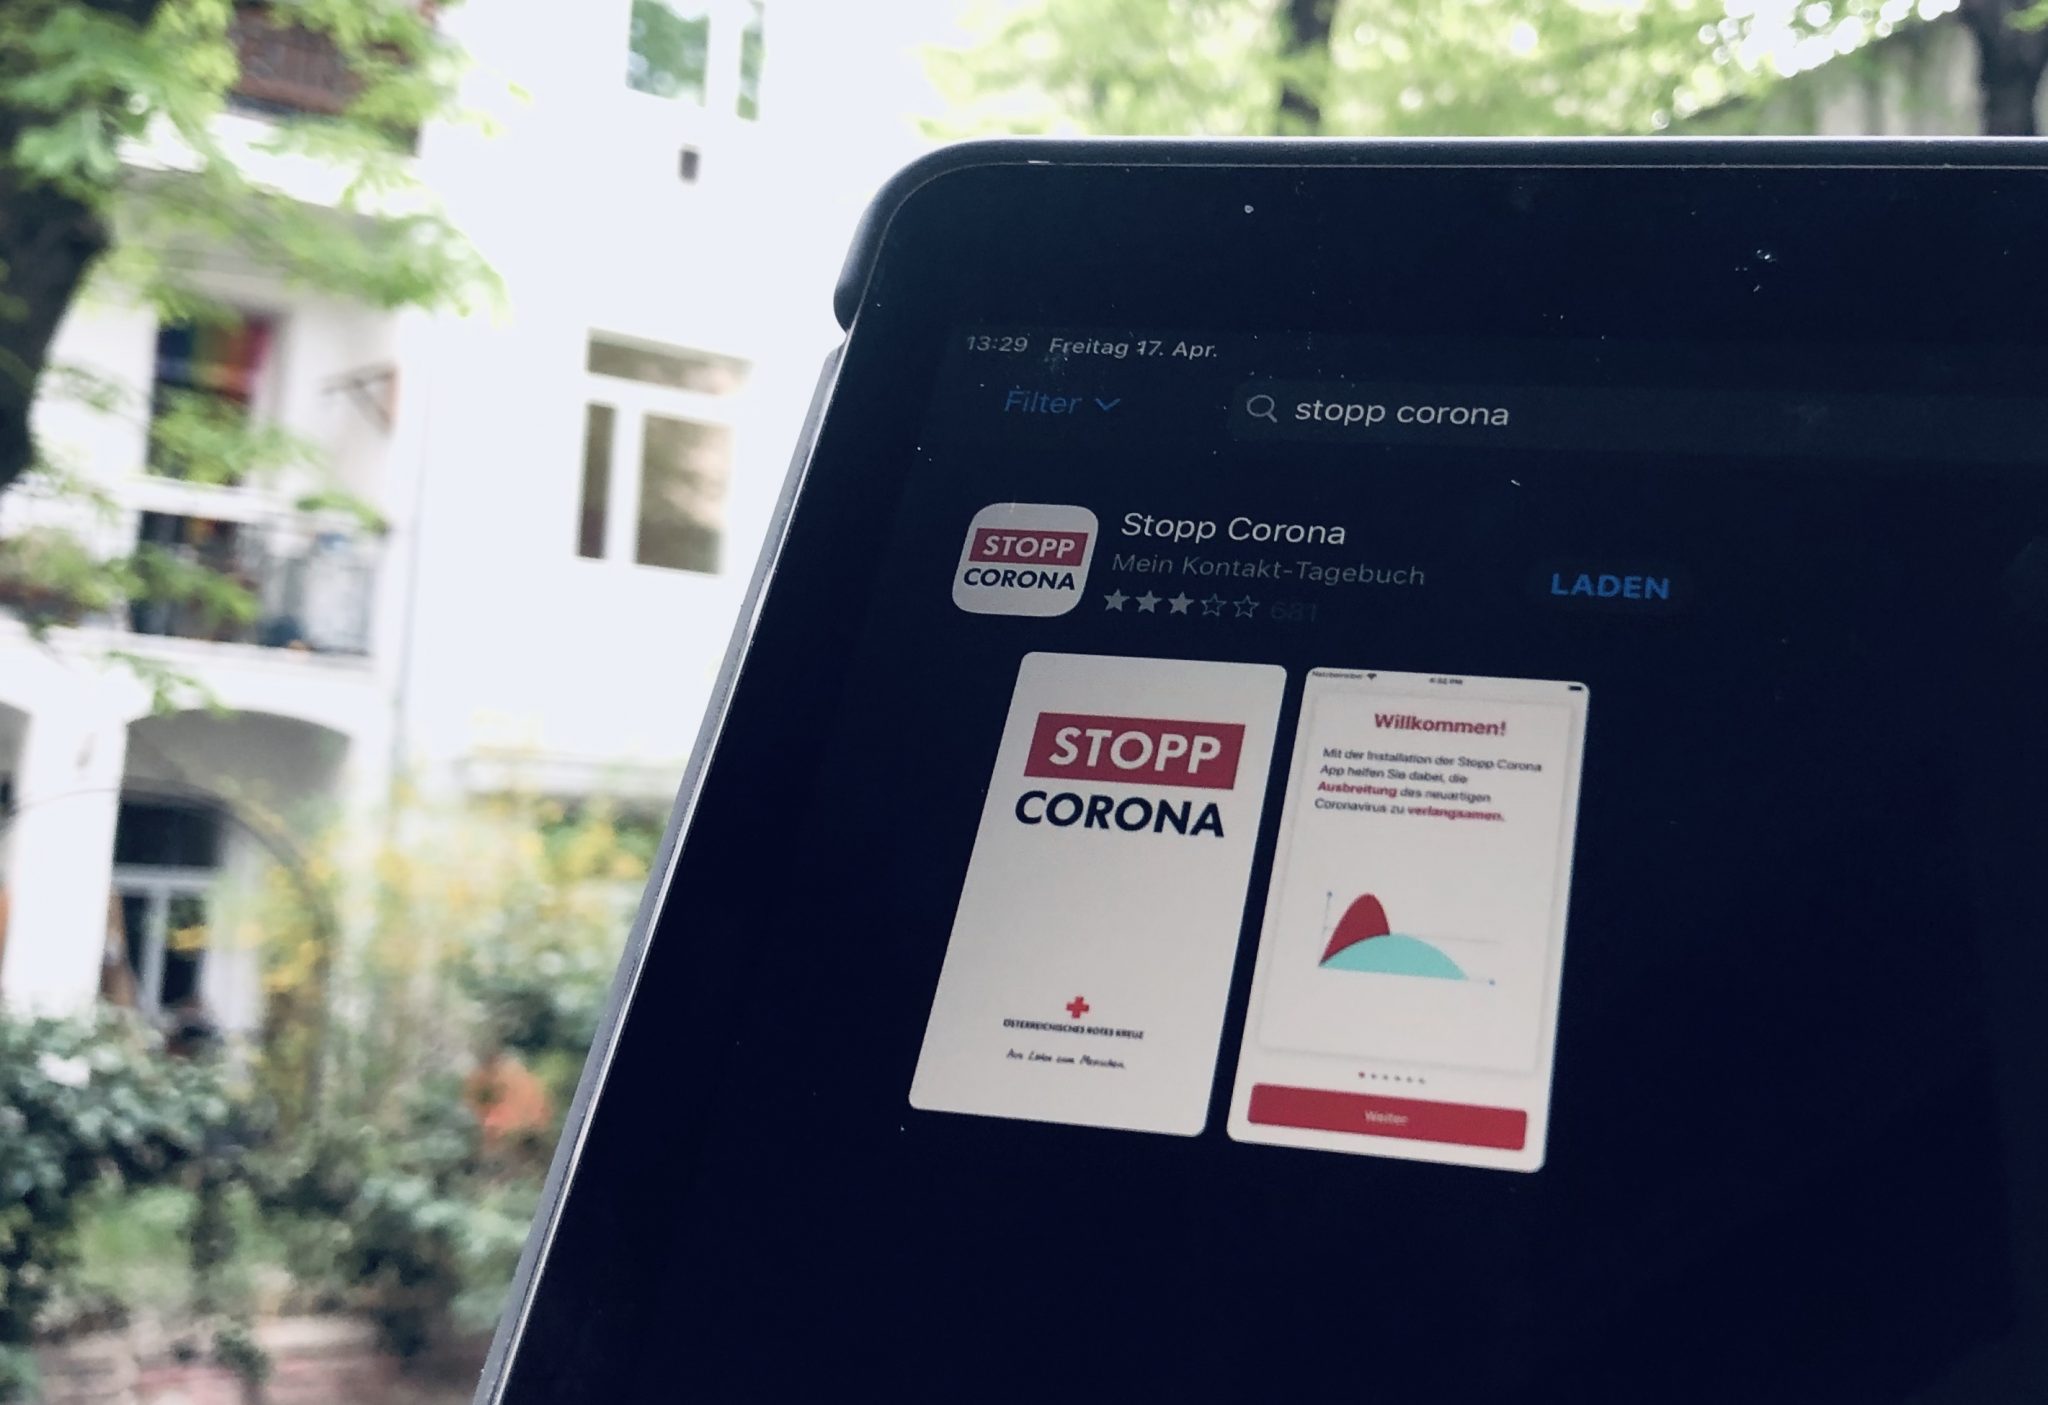 Die „Stopp Corona“ App funktioniert nicht gut genug, um die Überwachung zu rechtfertigen